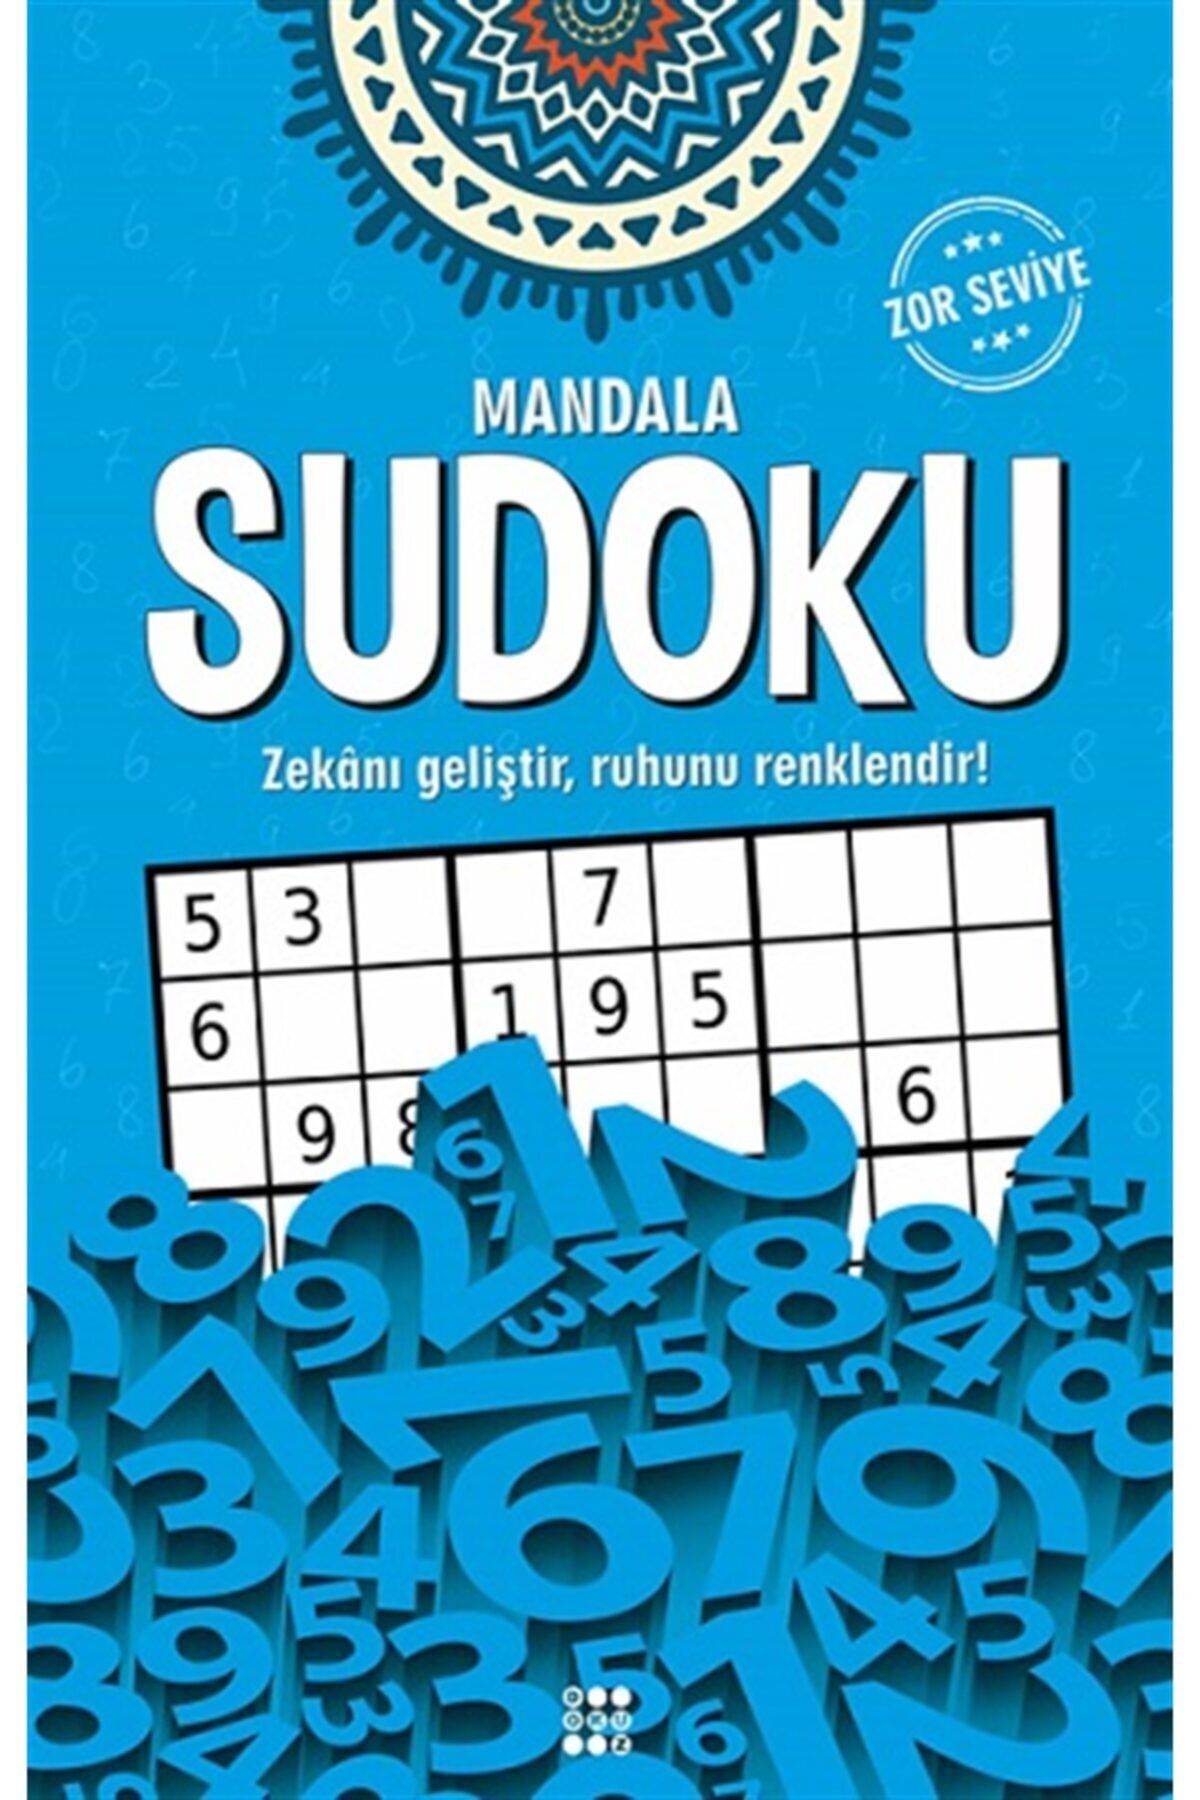 Timaş Yayınları Mandala Sudoku - Zor Seviye Dokuz Yayınları Kolektif